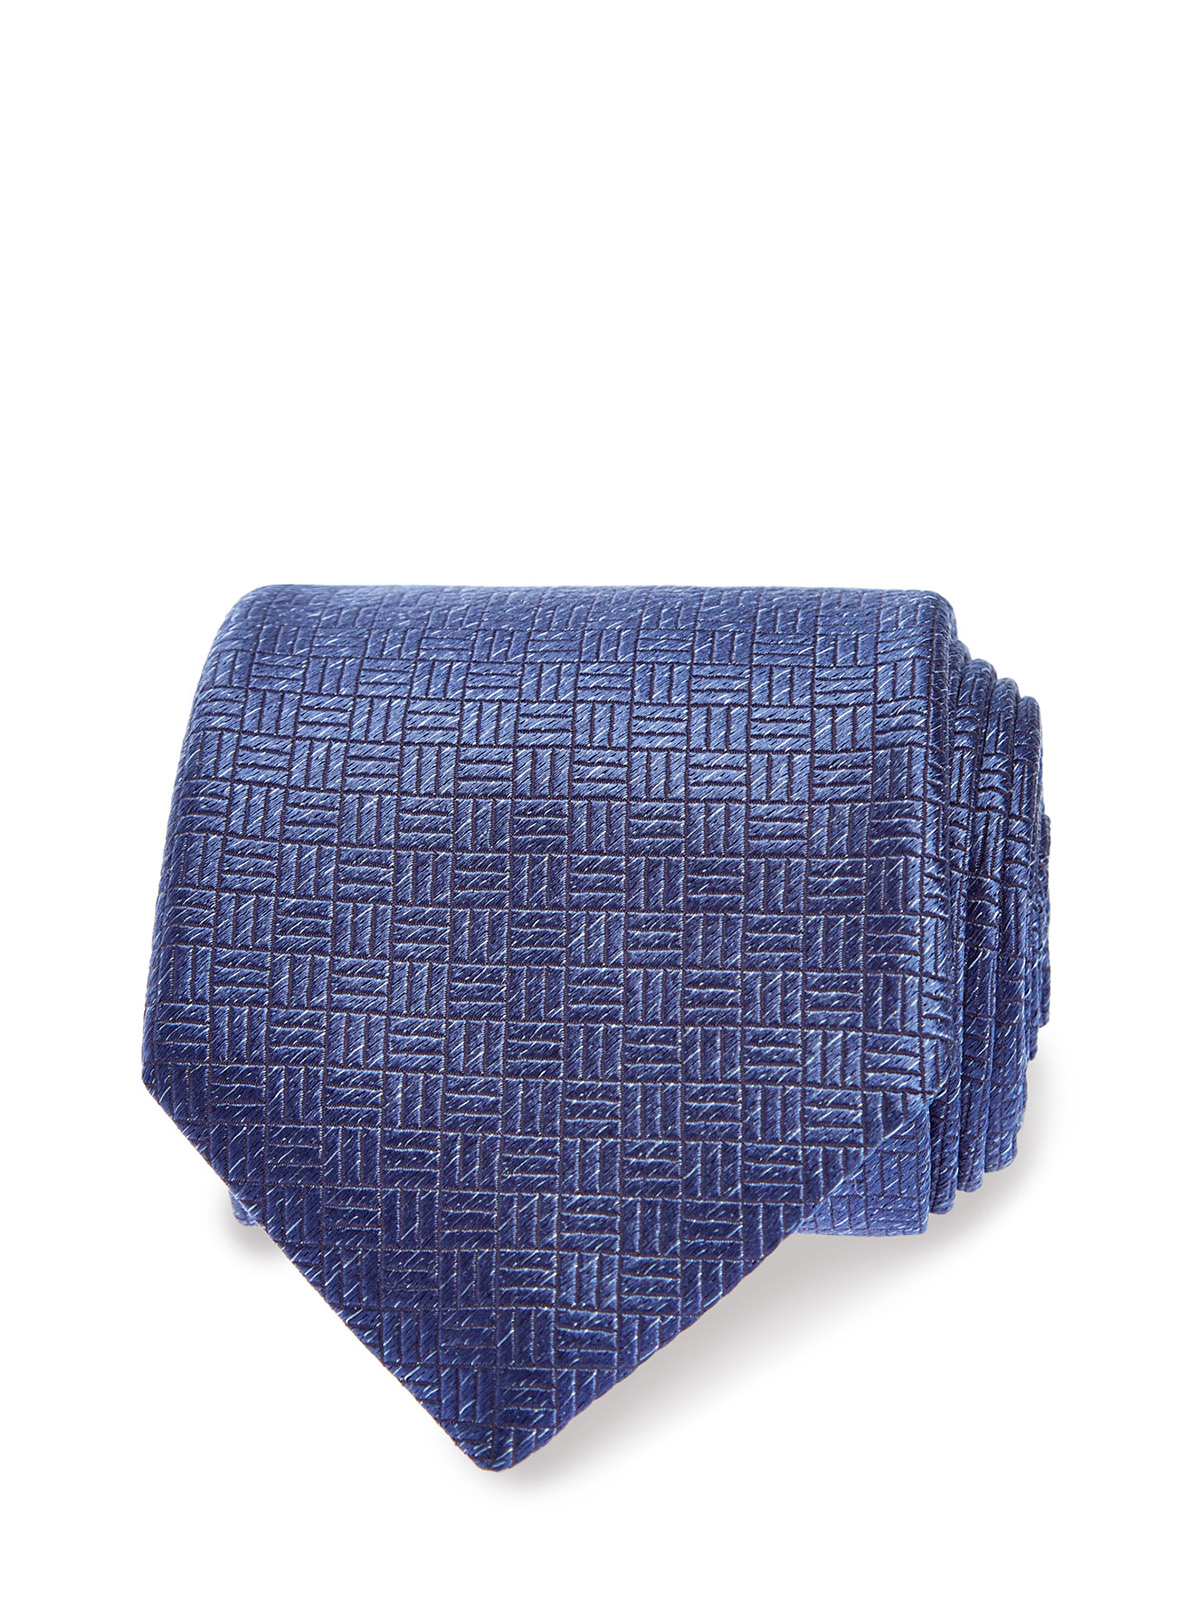 Галстук из шелка с вышитым глянцевым принтом CANALI, цвет синий, размер 37.5;38;38.5;39;40.5